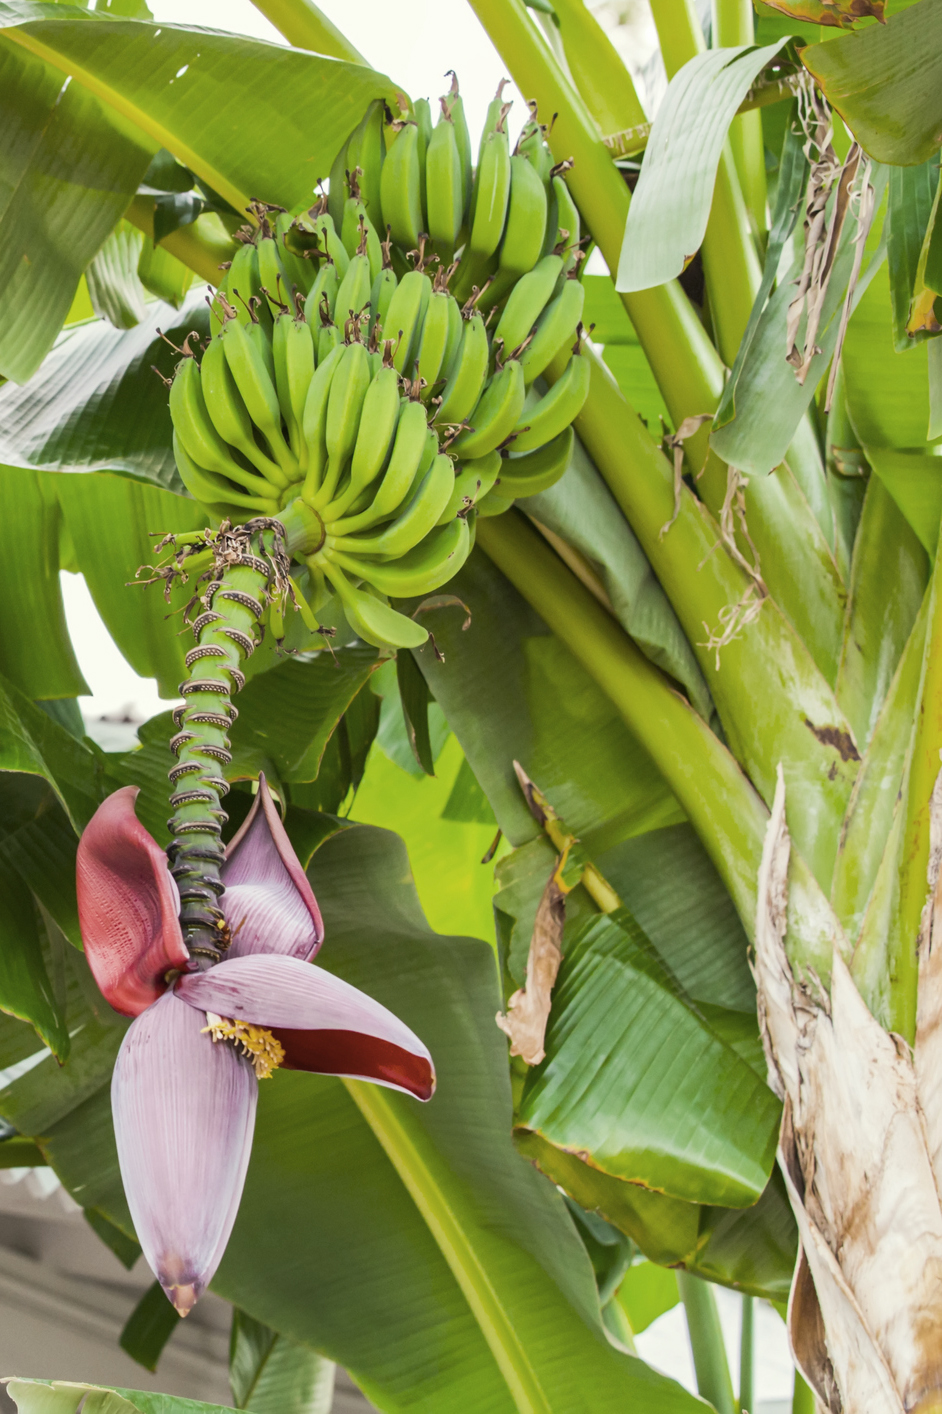 Na discussie in 'De slimste mens': bananen die je darmen verstoppen, klopt  dat wel? Dit doet de vrucht echt in je buik